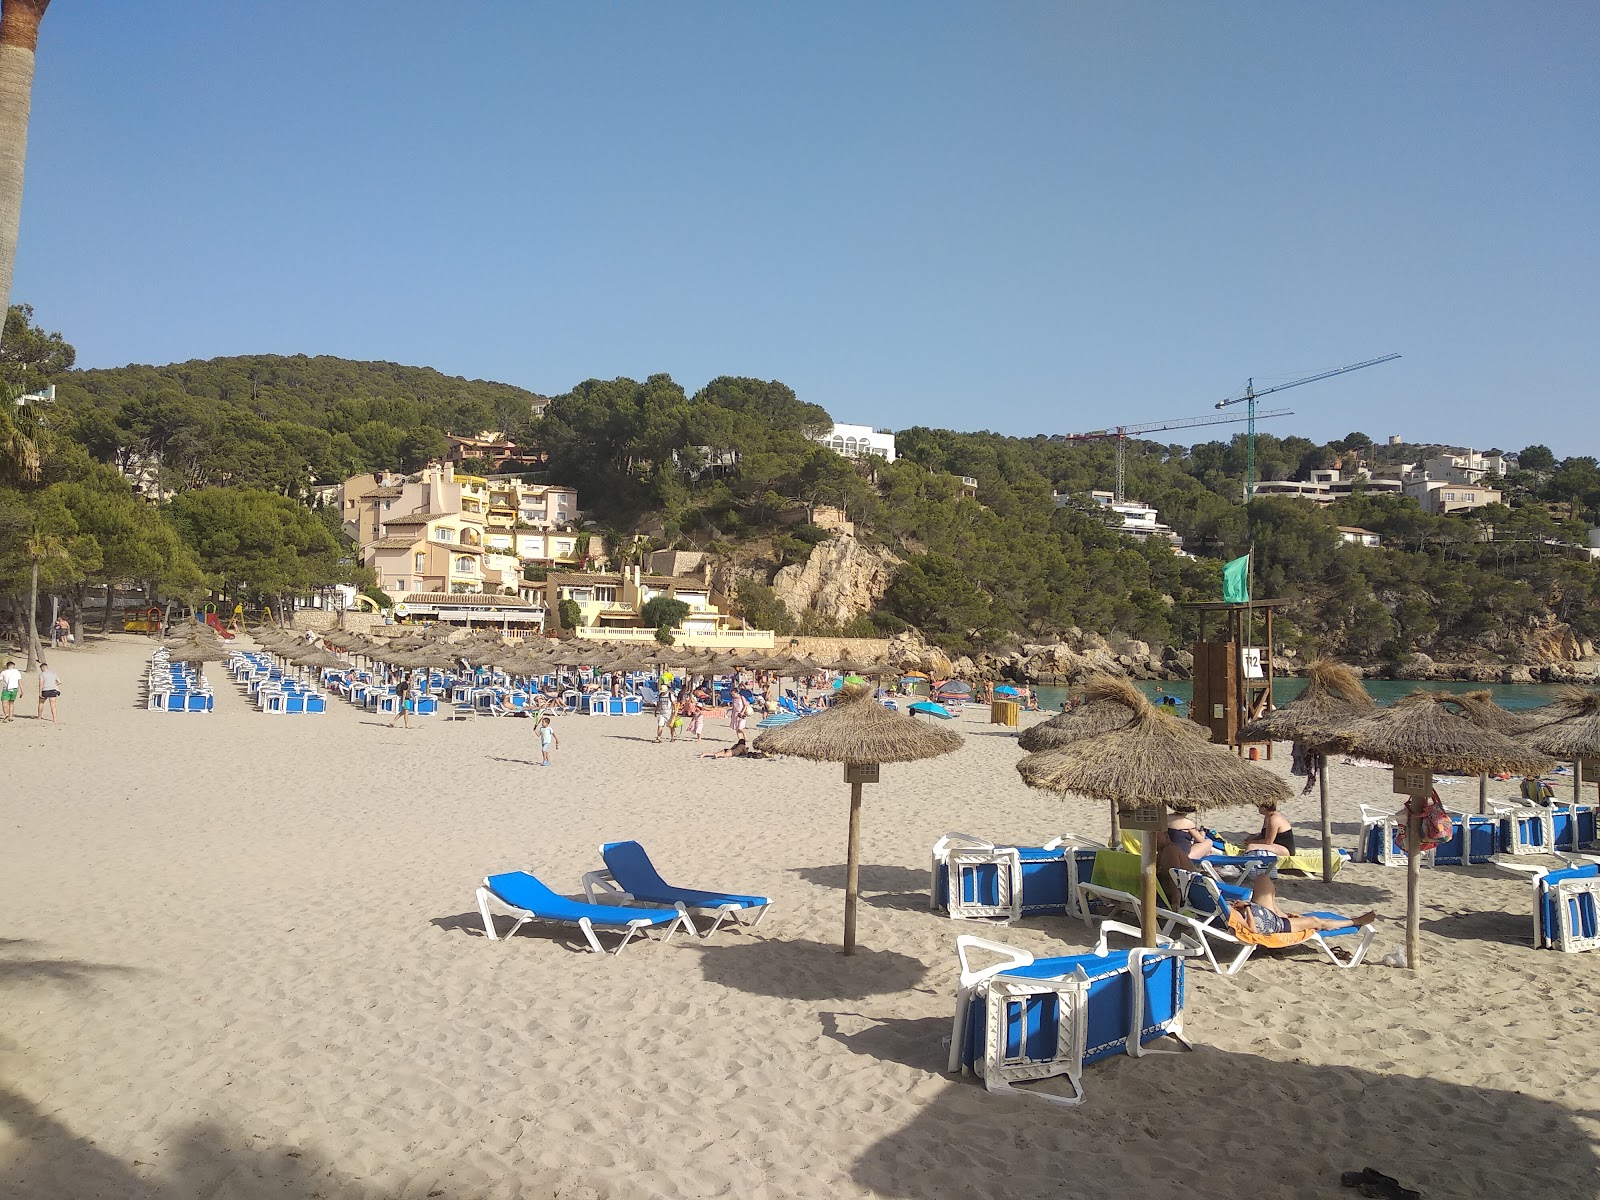 Photo of Camp De Mar beach amenities area